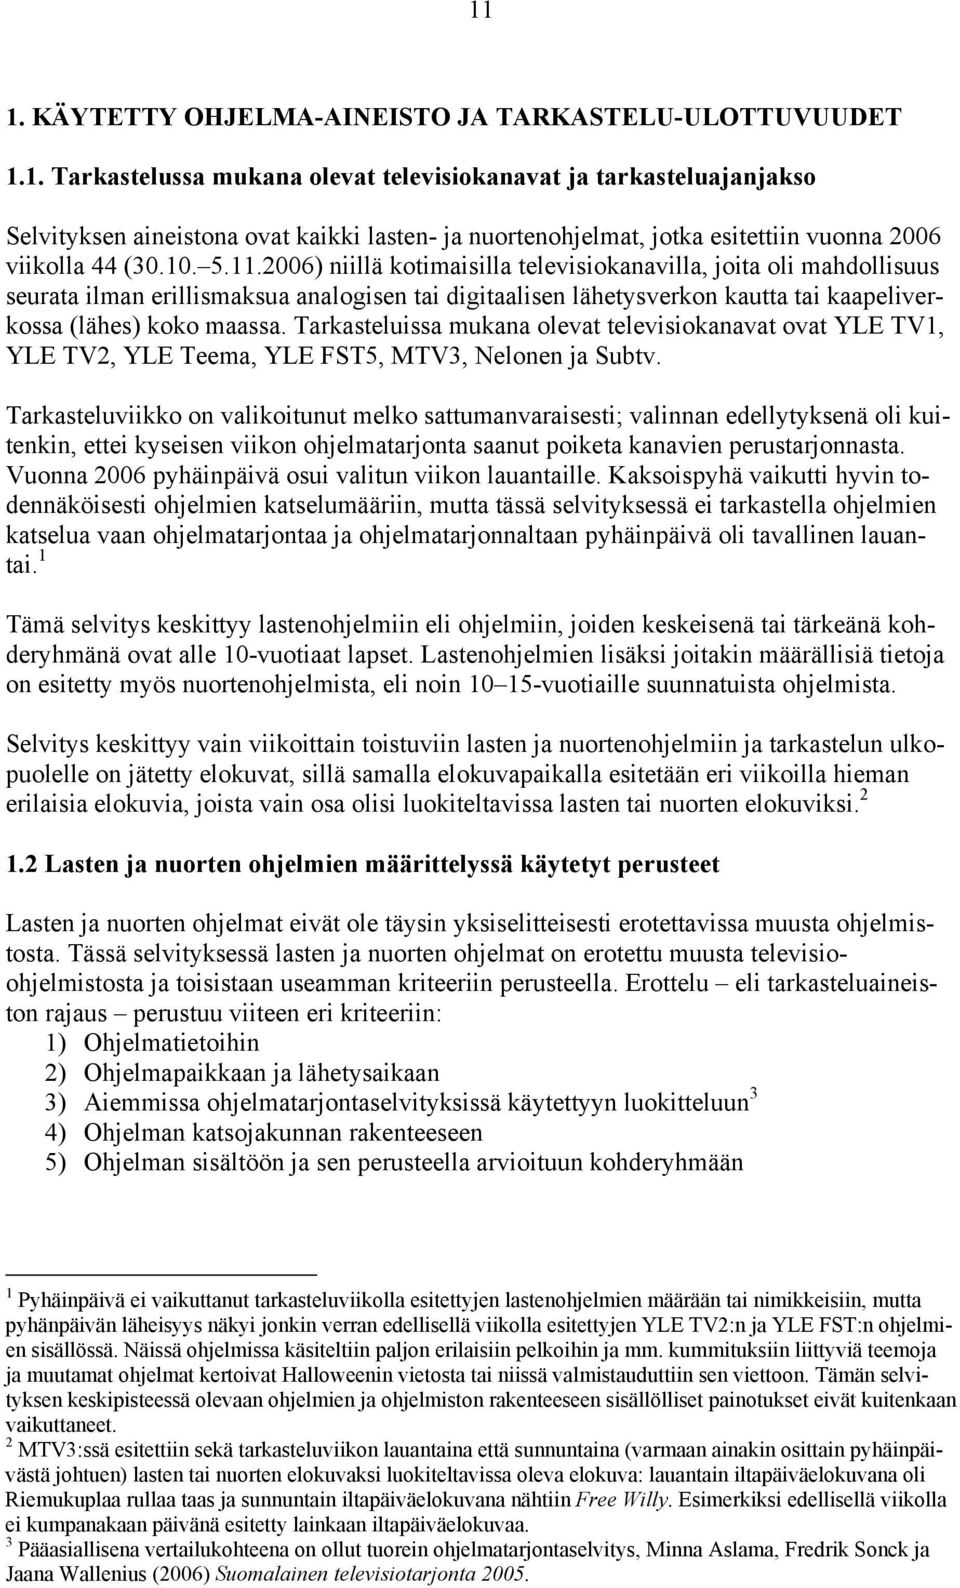 Tarkasteluissa mukana olevat televisiokanavat ovat YLE TV1, YLE TV2, YLE Teema, YLE FST5, MTV3, Nelonen ja Subtv.